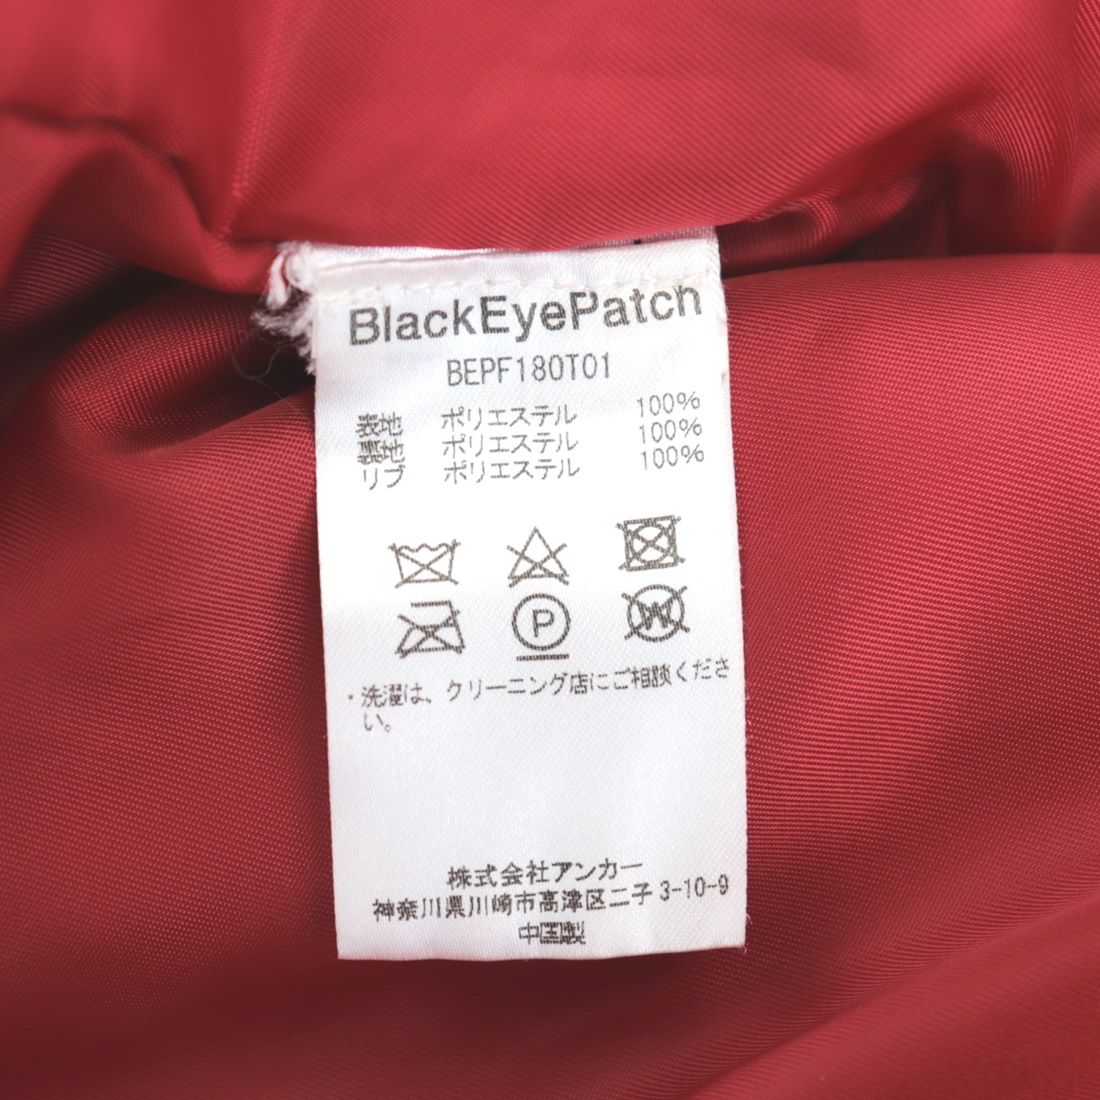 美品 ブラックアイパッチ 18AW ロゴ刺しゅうフェイクレザーブルゾン メンズ 赤 M ジャケット BEPF180T01 BlackEyePatch